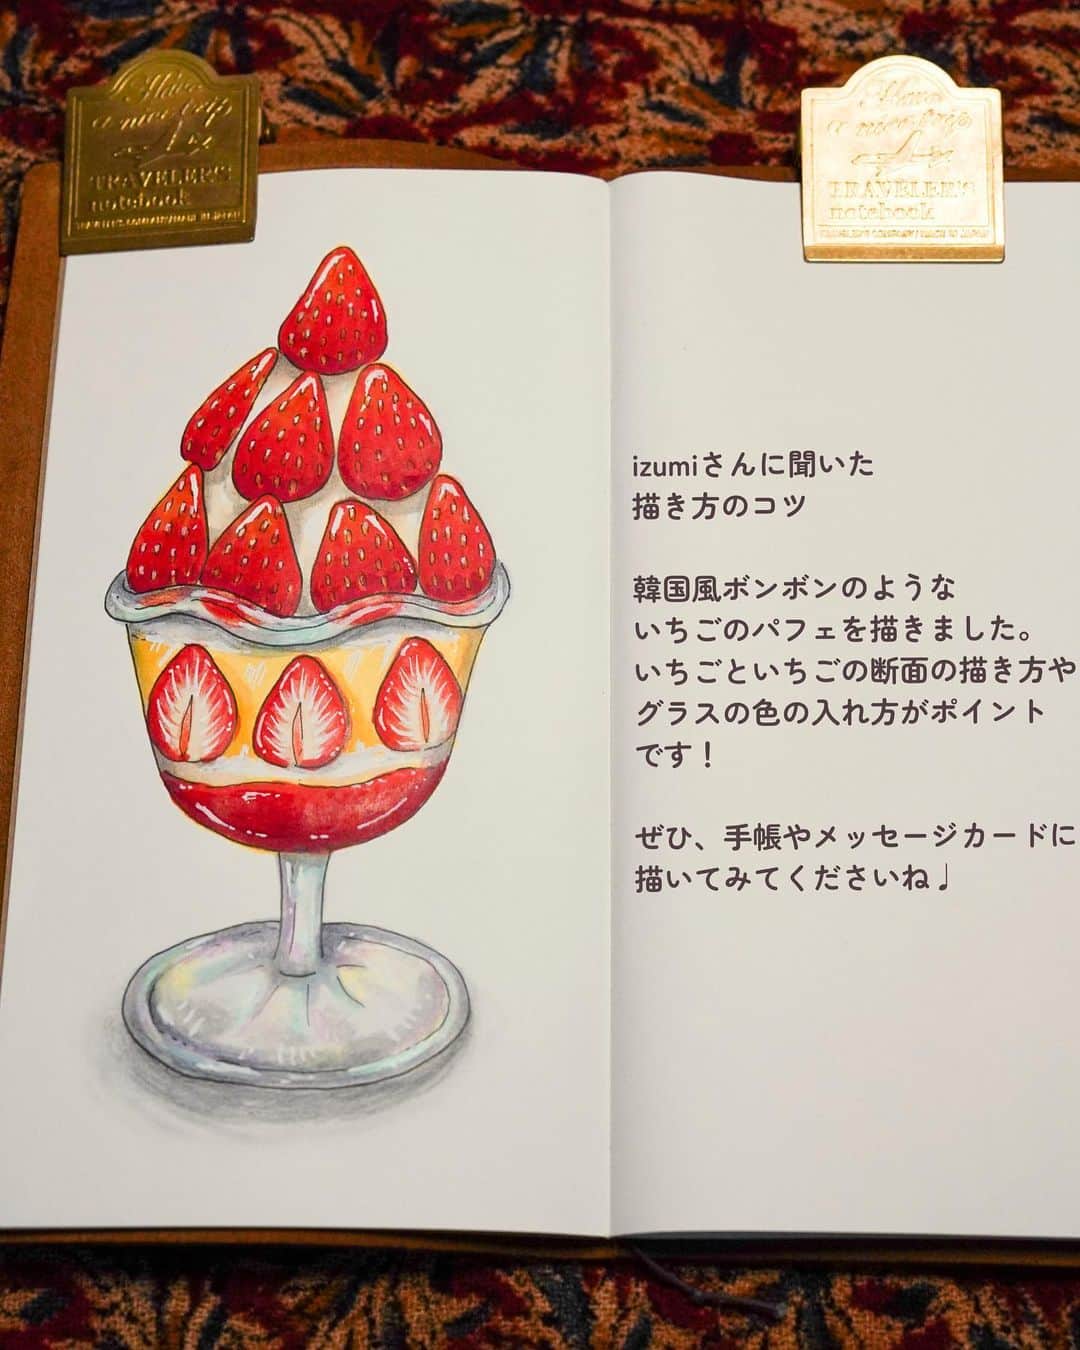 chintai_lifeさんのインスタグラム写真 - (chintai_lifeInstagram)「#住んだら手帳 「#かわいいイラストの描き方講座」📖🖌 ⁡ 今回は、#いちごパフェ 🍓の「仕上げ」について、食べ物イラスト作家のizumiさん（@izumi_chuchu）に教えていただきました🎨 いちごパフェは今回で完成です✨ ⁡ 本企画では、手帳に描きたくなる"かわいいイラスト"の描き方を解説します♩ ⁡ 使用した画材やこだわりポイントも紹介しているので、実際に手帳やメッセージカードにイラストを描いてみてくださいね。 ⁡ 「線画」「着彩」「仕上げ」の全3部作でお届けしています。過去の投稿もぜひチェックしてみてくださいね ☞@sundara_techo ⁡ - - - - - - - - - - - - - - - - - - - - - - - - - - - - - - - - - - 【いちごパフェの描き方】③ 仕上げ ⁡ 1)いちごの細部を塗る ⁡ ●ポイント コピックで塗った部分の上から油性色鉛筆を塗り、さらにコピックで塗り重ねてなじませる…という工程を繰り返すことで色に深みが出ます。 ⁡ 上のいちごは、影になる下側を濃い赤色で、光が当たる上側を明るい赤色でグラデーションにし、黄色の油性色鉛筆を塗って光を表現します。 ⁡ 種は、茶色のコピックで下地が半分くらい残るように塗ります。 ⁡ ●使った画材 ヴァンゴッホ油性色鉛筆 334、370、284 コピックスケッチ R17、E23 ⁡ 2)いちごの断面、ホイップ、カスタード、ジャムを塗る ⁡ ●ポイント いちごの断面は外側から内側にかけて濃さの異なる赤色の油性色鉛筆で塗り、薄いクリーム色のコピックをなじませて透明感を表現します。 ⁡ ホイップ、カスタード、ジャムは、影を意識しながらそれぞれ濃いグレー、黄色、赤色の油性色鉛筆で塗ります。 ⁡ ●使った画材 ヴァンゴッホ油性色鉛筆 E41、R17、Y21 コピックスケッチ 334、370、739、227、284、222 ⁡ 3)グラスを油性色鉛筆で塗り、透明のコピックでなじませる ⁡ ●ポイント グラスは、影を濃いグレーと薄いグレーの油性色鉛筆で塗り、輝きをブルー・ピンク・イエローの油性色鉛筆で表現します。それぞれ、透明のコピックでなじませます。あえてカラフルな色を入れる ことで、グラスの透明感と輝きを表現します。 ⁡ グラスの影は、黒色の油性色鉛筆を塗り、透明コピックでなじませて奥行きを出します。 ⁡ ●使った画材 ヴァンゴッホ油性色鉛筆739、728、659、577、254 コピックスケッチ0 ⁡ 4)光が当たっている部分にポスカでハイライトを入れて、イラストの完成！ ⁡ ●ポイント ポスカの極細の白は、色を重ねて塗った上からでもきれいに発色します。いちごのテリやグラスの光の部分に、実際に目で見えるよりも少し多めにハイライトを入れることでより綺麗に、美味しそうに見えます。 ⁡ ●使った画材 ポスカ極細白 ⁡ - 仕上げに使用した画材 - #ヴァンゴッホ色鉛筆 ⁡ 334(スカーレット)、370(パーマネントレッドライト)、222(ネープルスイエローライト) 254(パーマネントレモンイエロー)、284(パーマネントイエローミディアム)、 659(セーブルスグリーンライト)、577(パーマネントレッドバイオレットライト) 728(ウォームグレーライト)、739(コールドグレーディープ)、227(イエローオーカー) ⁡ #コピックスケッチ ⁡ R17(リップスティックオレンジ)、R27(カドミウム・レッド)、E23(ヘーゼルナッツ)、 Y21(バターカップイエロー)、E41(パールホワイト)、0(カラーレスブレンダー) ⁡ #ポスカ 極細 白 ⁡ - - - - - - - - - - - - - - - - - - - - - - - - - - - - - - - - - - ⁡ イラストを描いたら、「#かわいいイラストの描き方講座」のハッシュタグをつけて投稿してね♩ ⁡ #住んだら手帳 ではあの街に「住んだら？」をテーマに手書きのイラストマップ を手帳に一発描きして紹介していきます📖✨ ⁡ イラストマップはこちら👉@sundara_techo」5月8日 19時24分 - sundara_techo